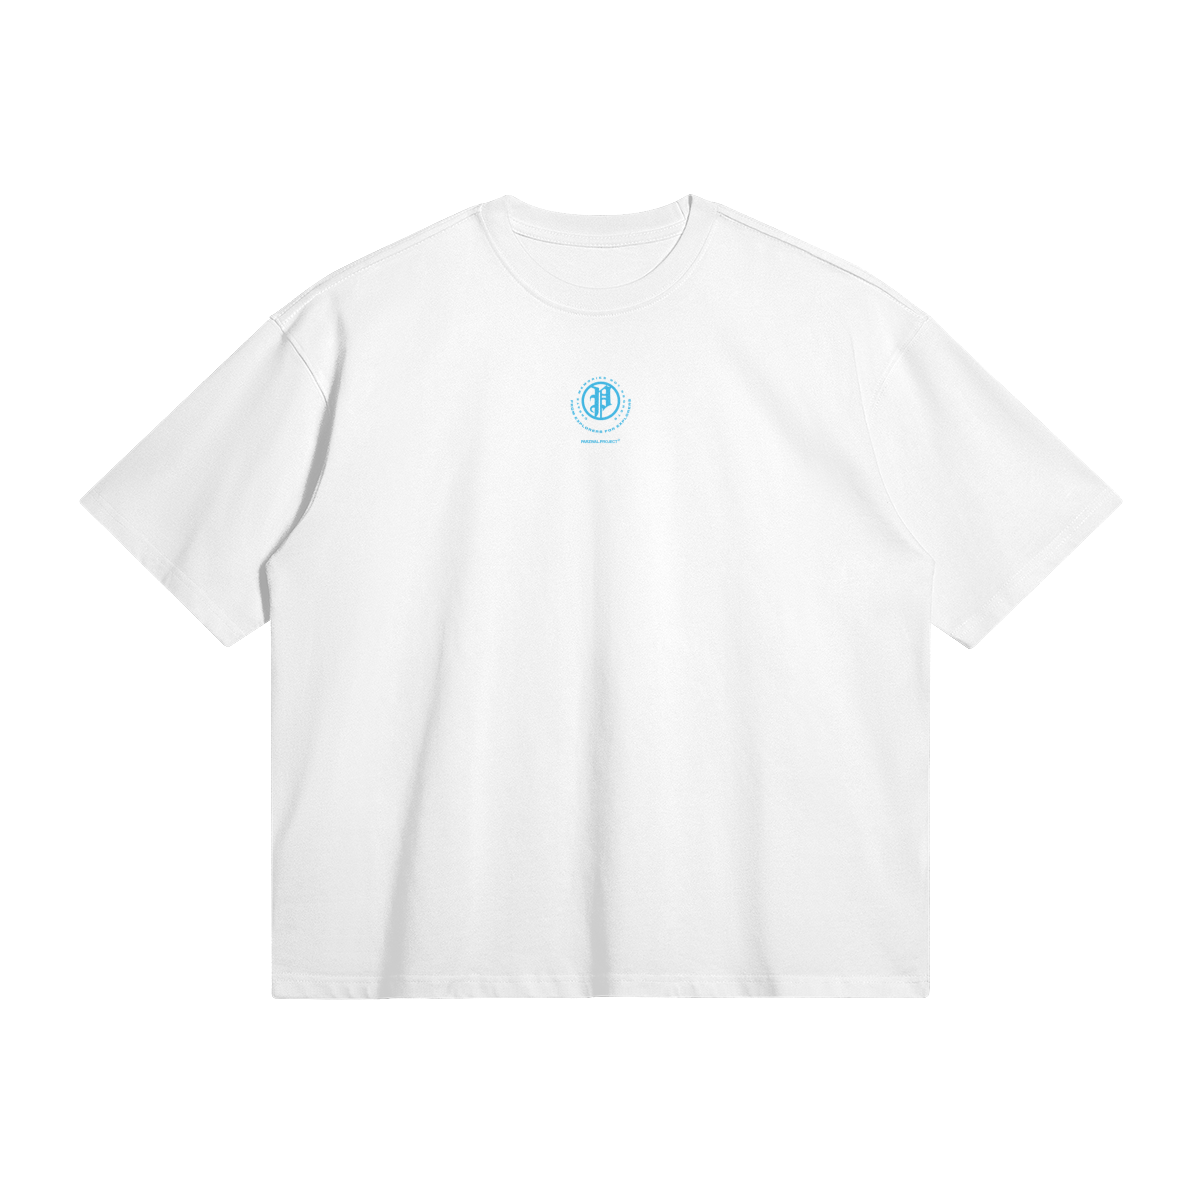 explorer shirt - light blue logo